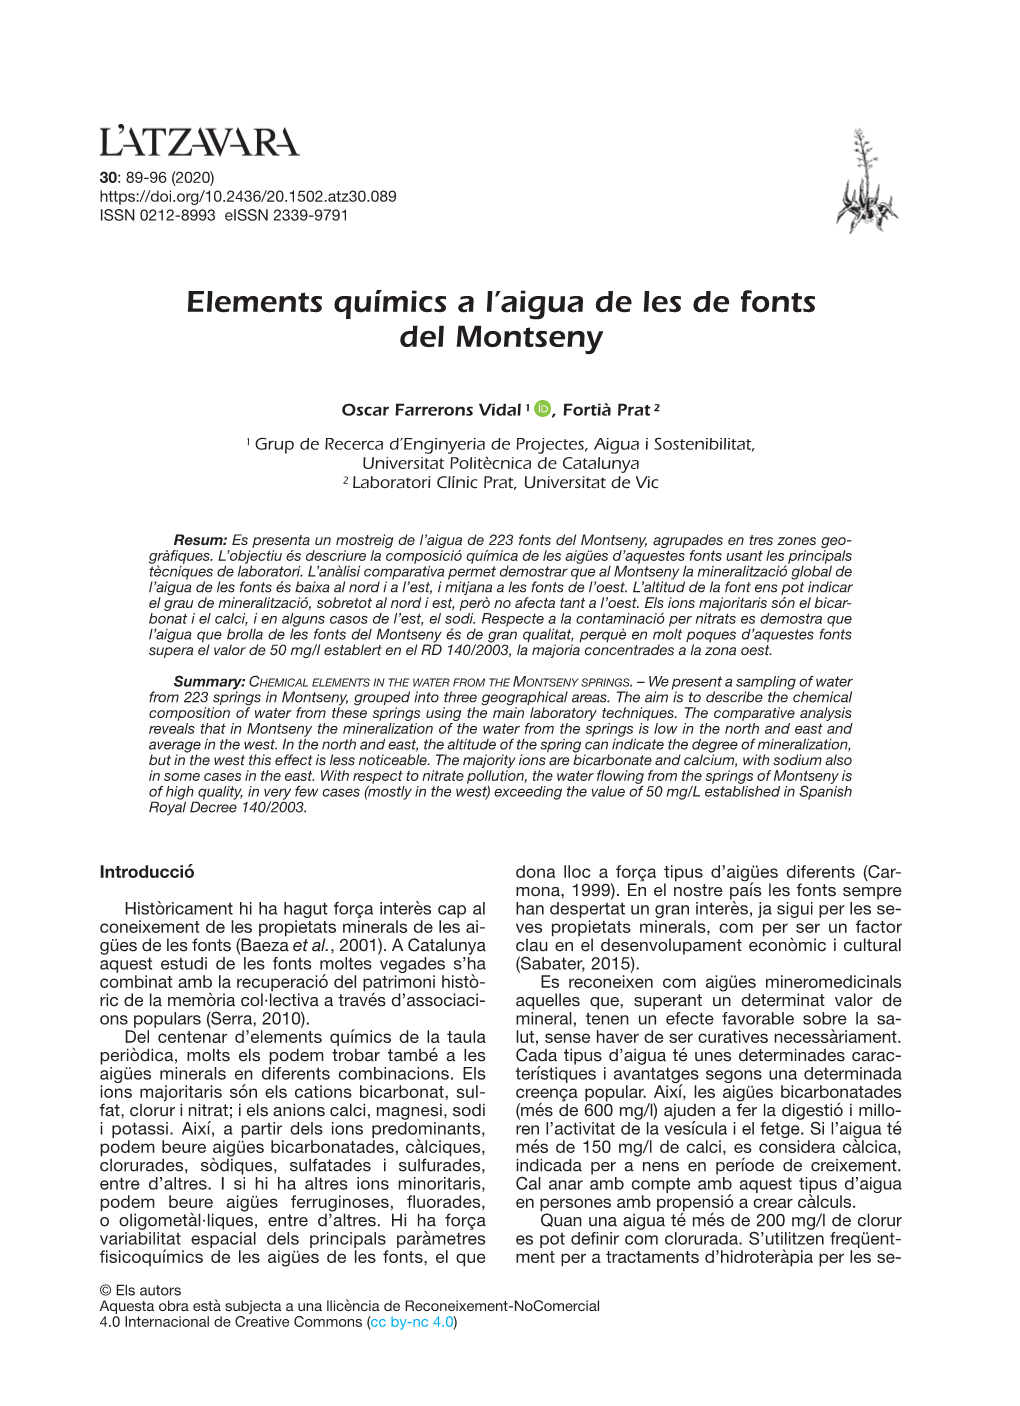 Elements Químics a L'aigua De Les De Fonts Del Montseny